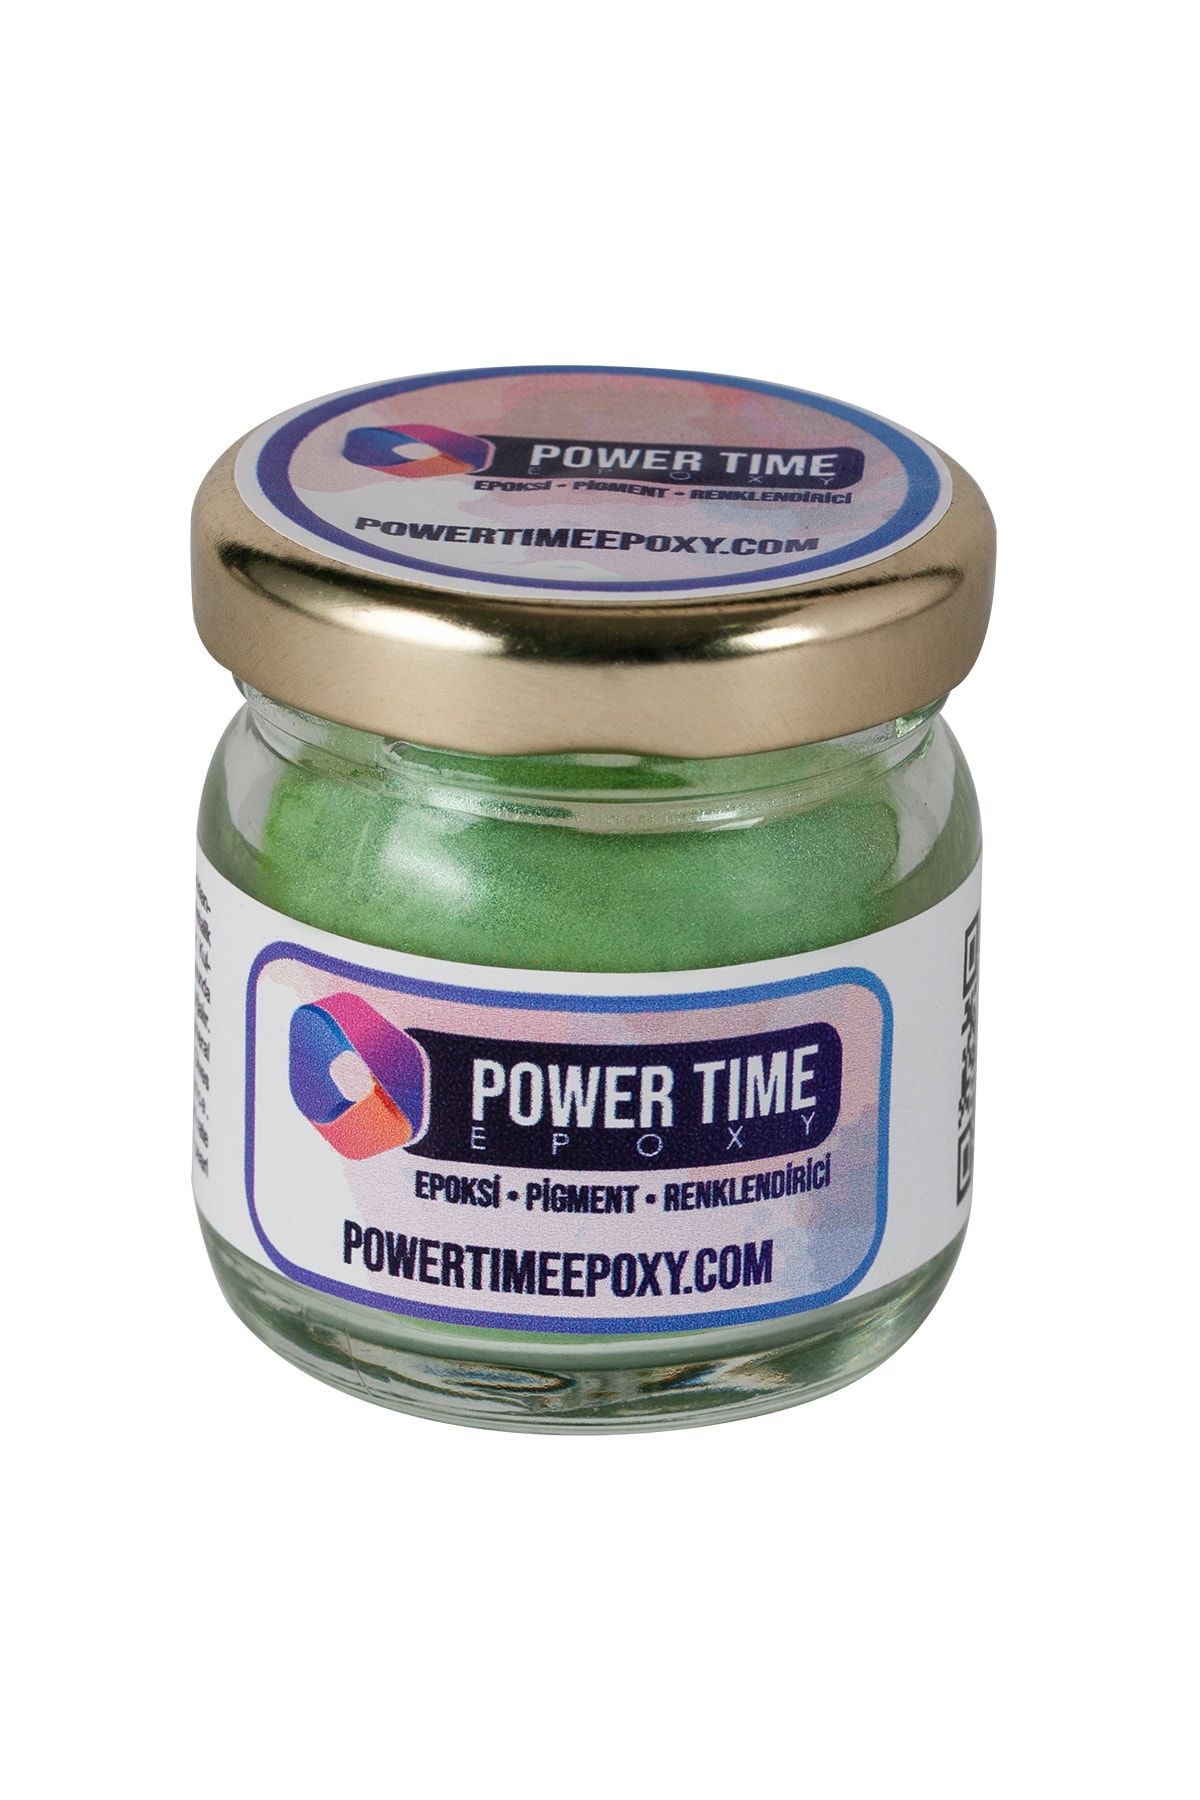 POWER TIME EPOXY Sedefli Metalik Toz Pigment Boya / Açık Yeşil / Epoksi Için